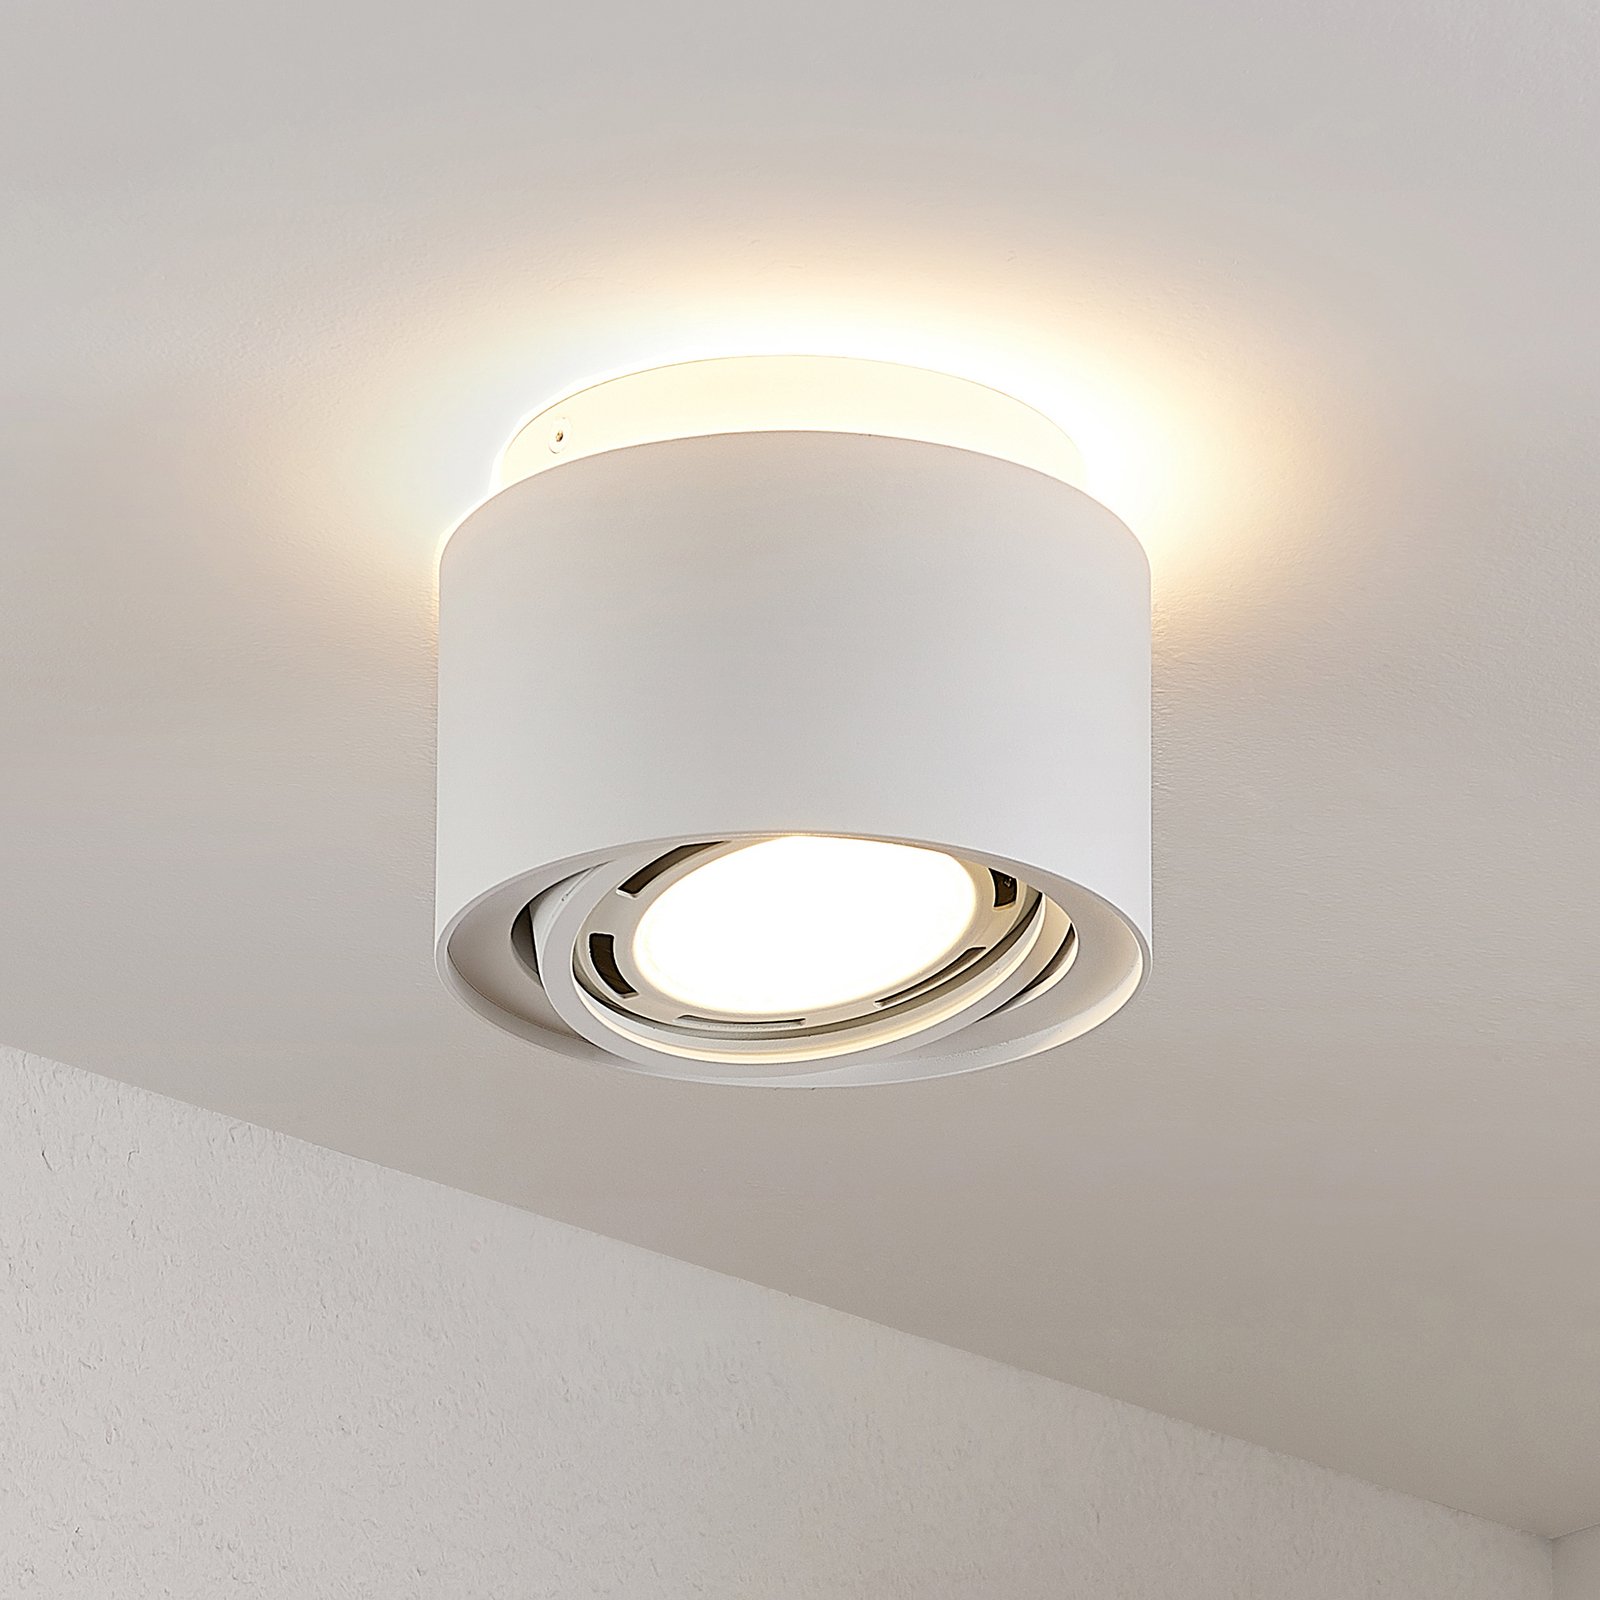 Arcchio Talima LED-Deckenlampe, rund, weiß